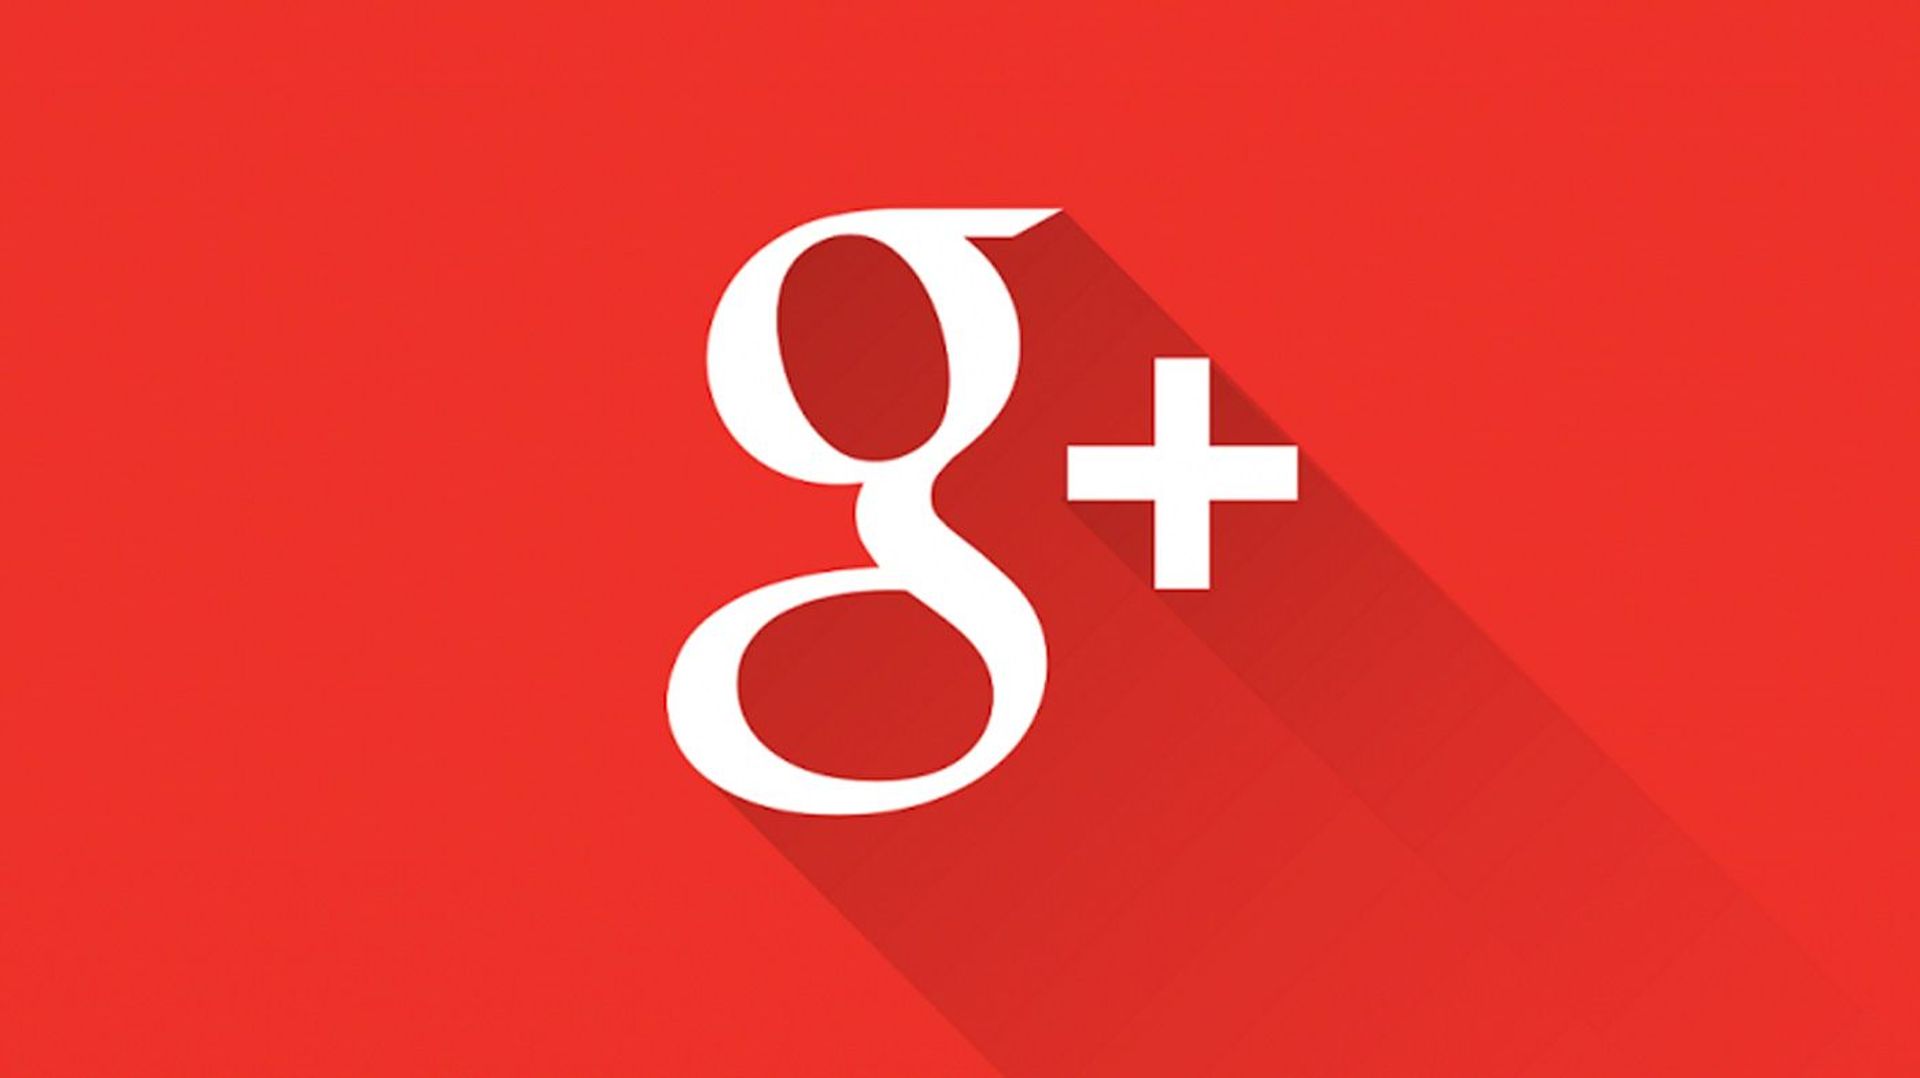 Google+ va fermer ses portes après la découverte d’une faille de sécurité